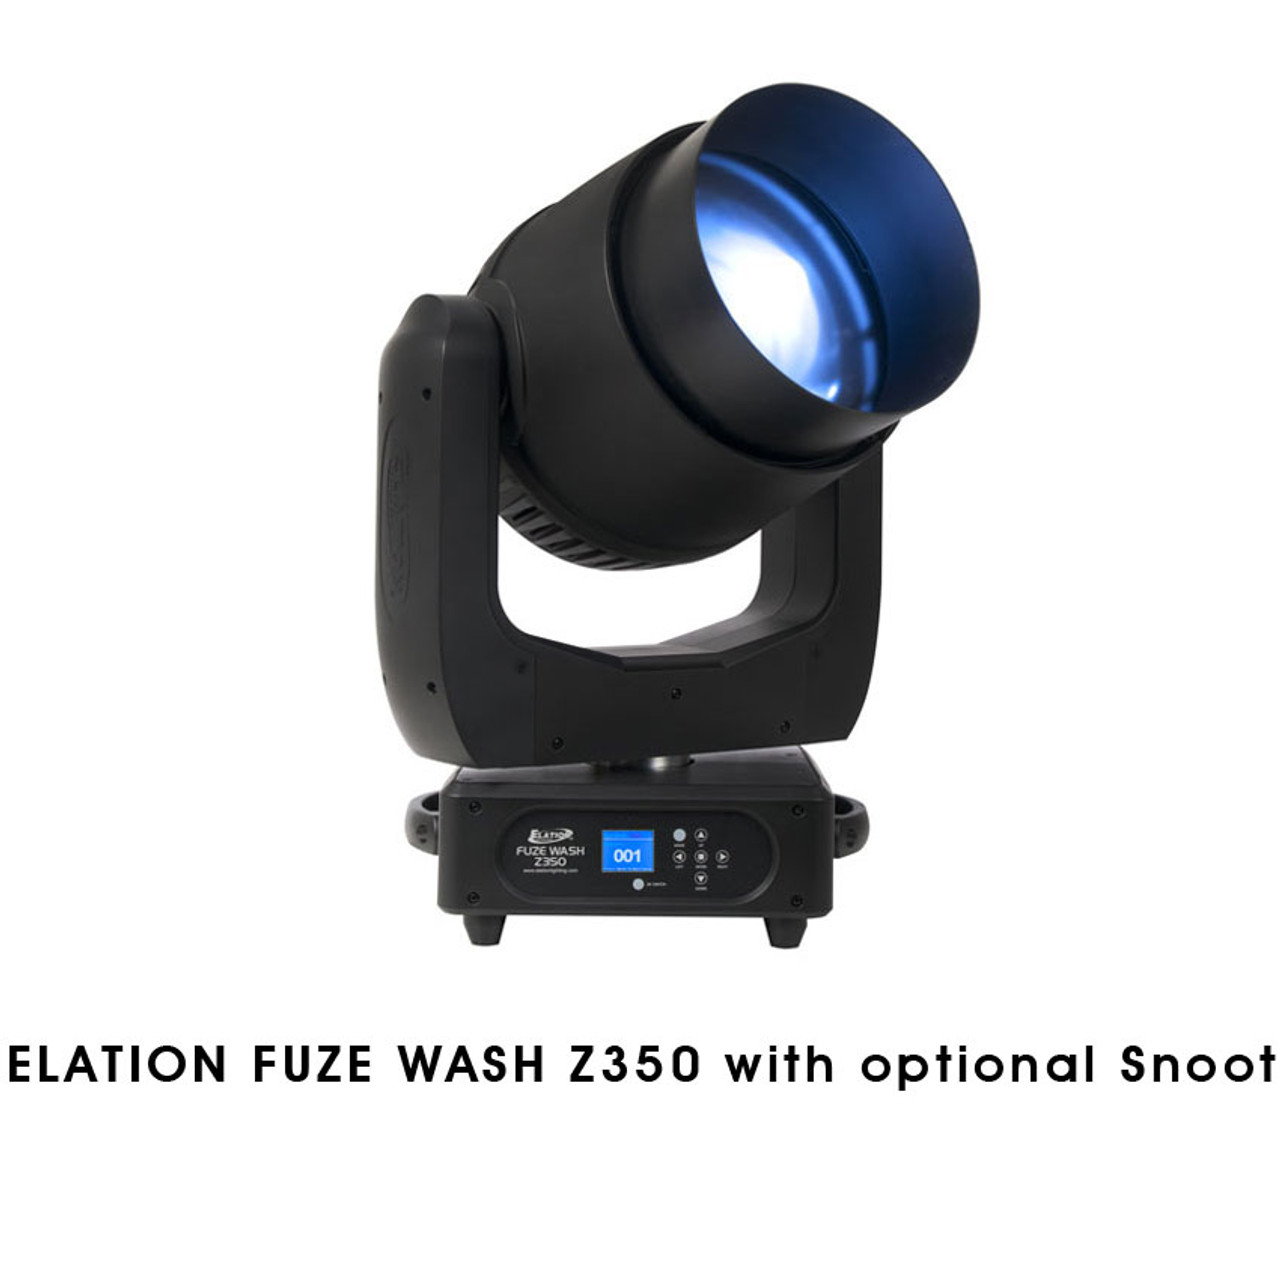 Elation Fuze Wash Z350